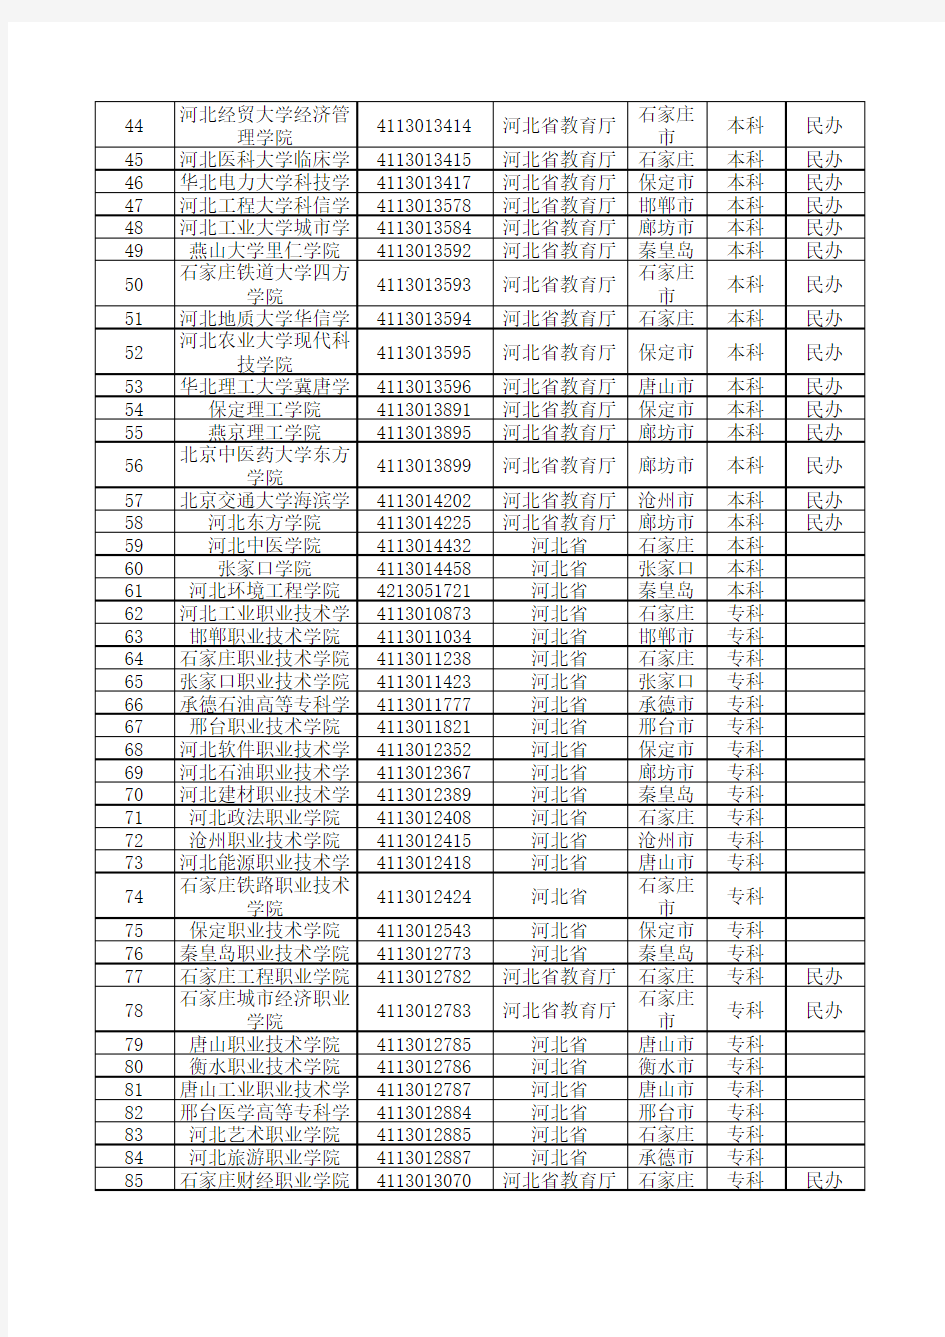 2020最新统计河北省普通高等学校名单(125所)